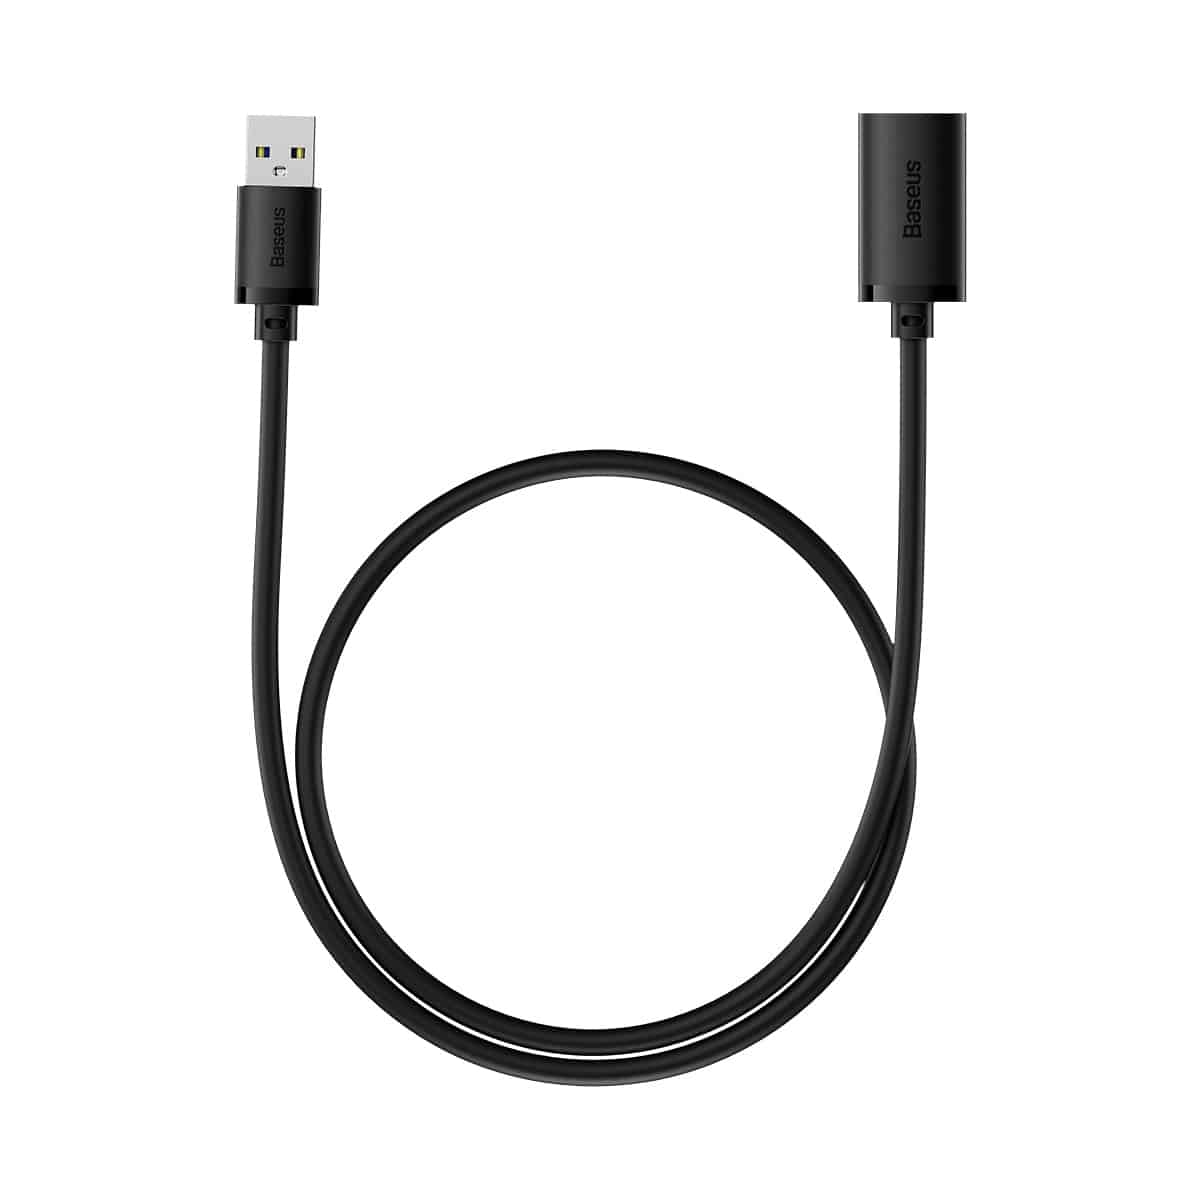 BASEUS AIRJOY SERIES USB3.0 EXTENSION CABLE CLUSTER BLACK